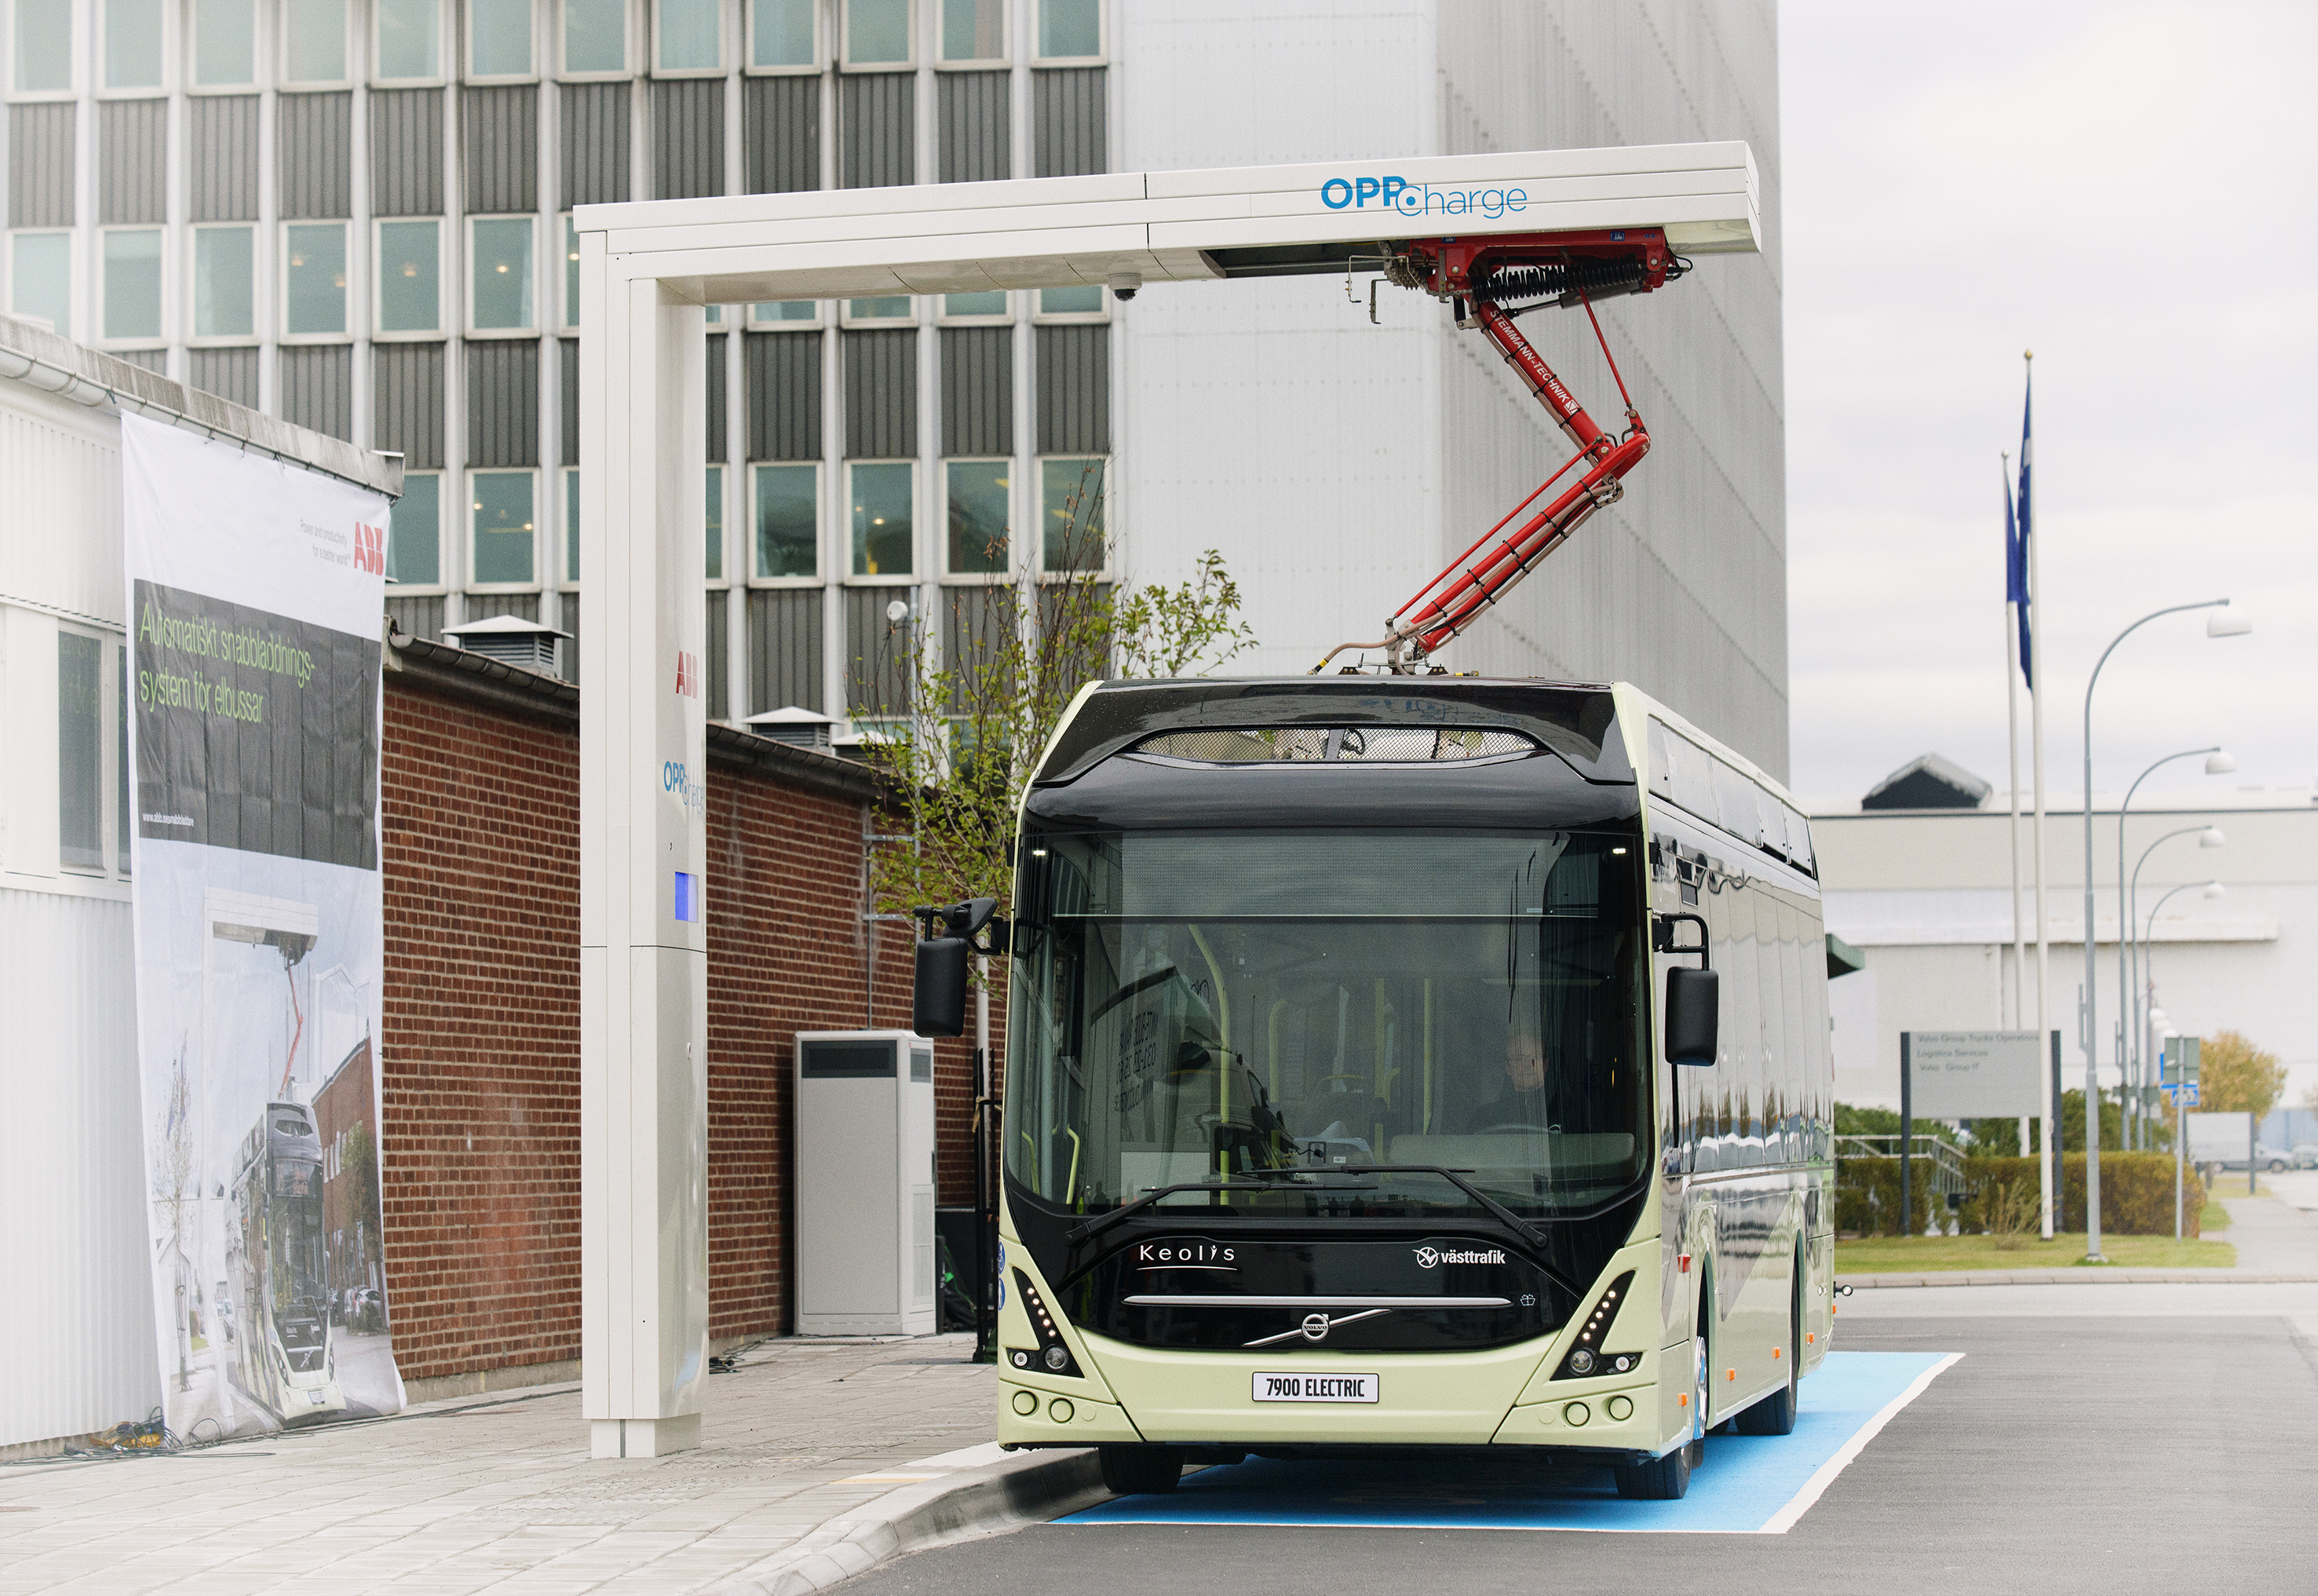 2016 10 12 Volvo Arendal Invigning av ABB laddstation för bussar. Samarbete med Volvo. Foto: Anna Rehnberg